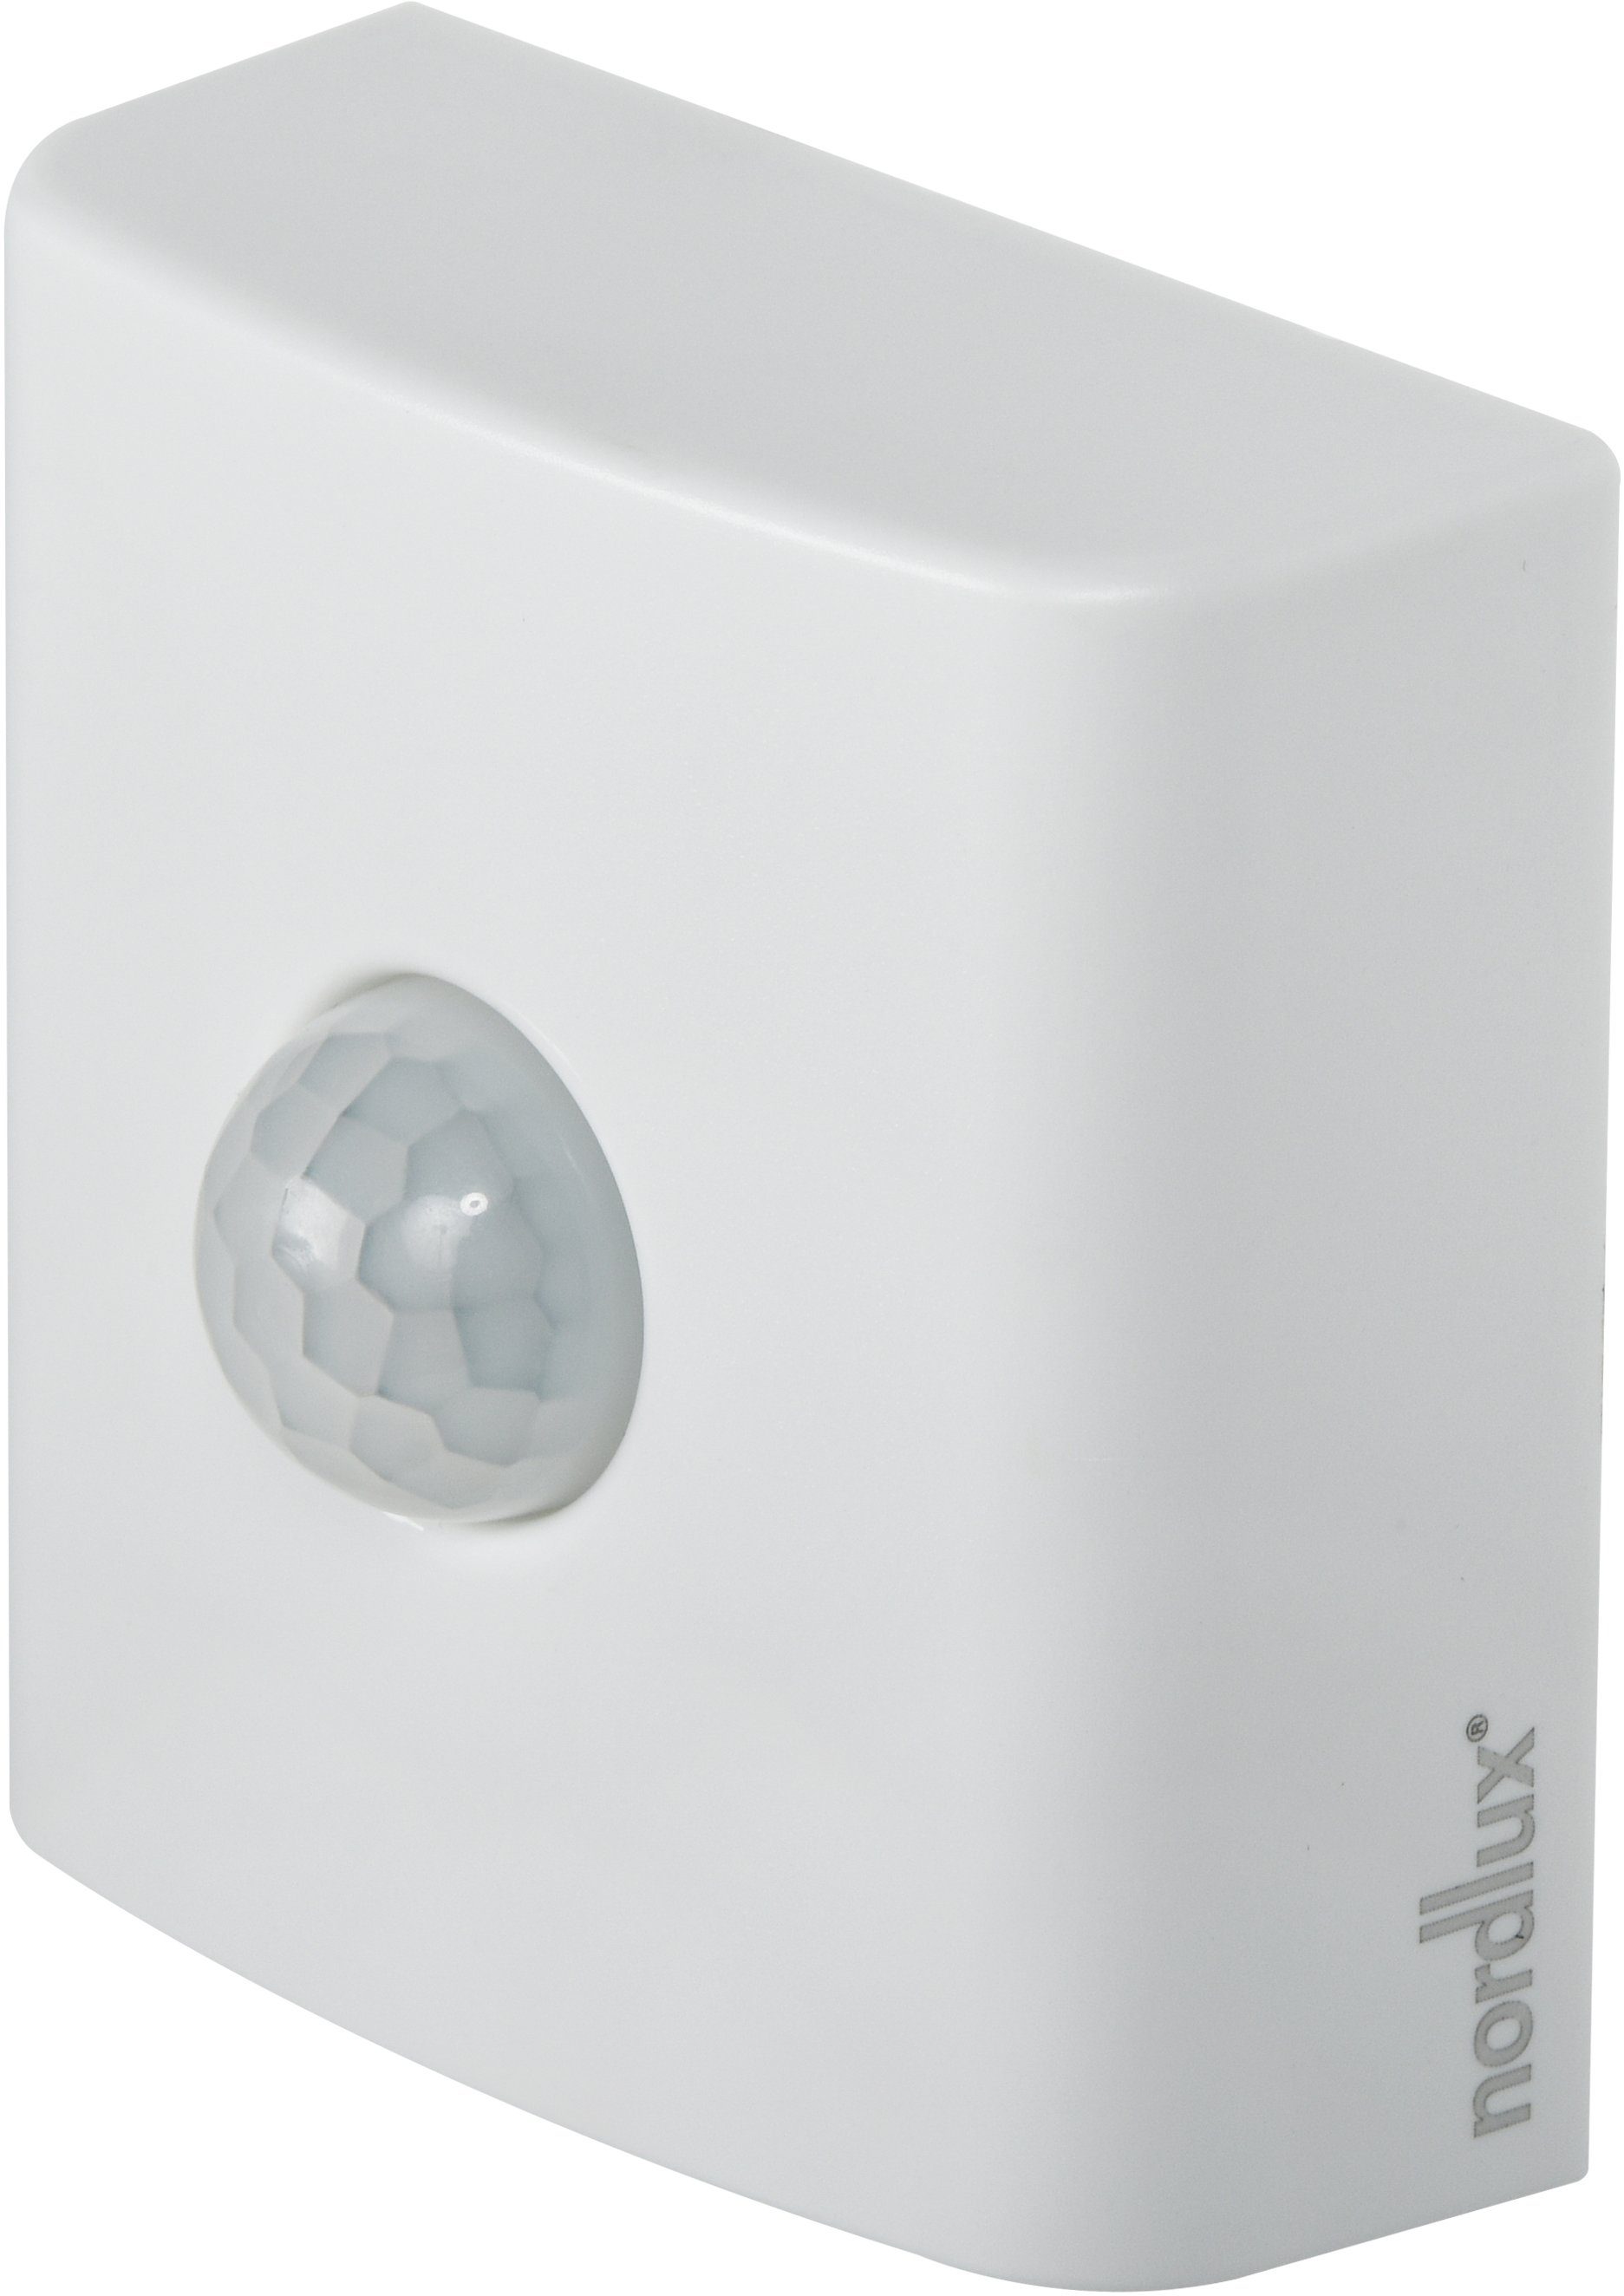 Nordlux Sensor Smartlight, Home Mobiler Dämmerungsmeldung Smart Sensor, Bewegungs-, weiß